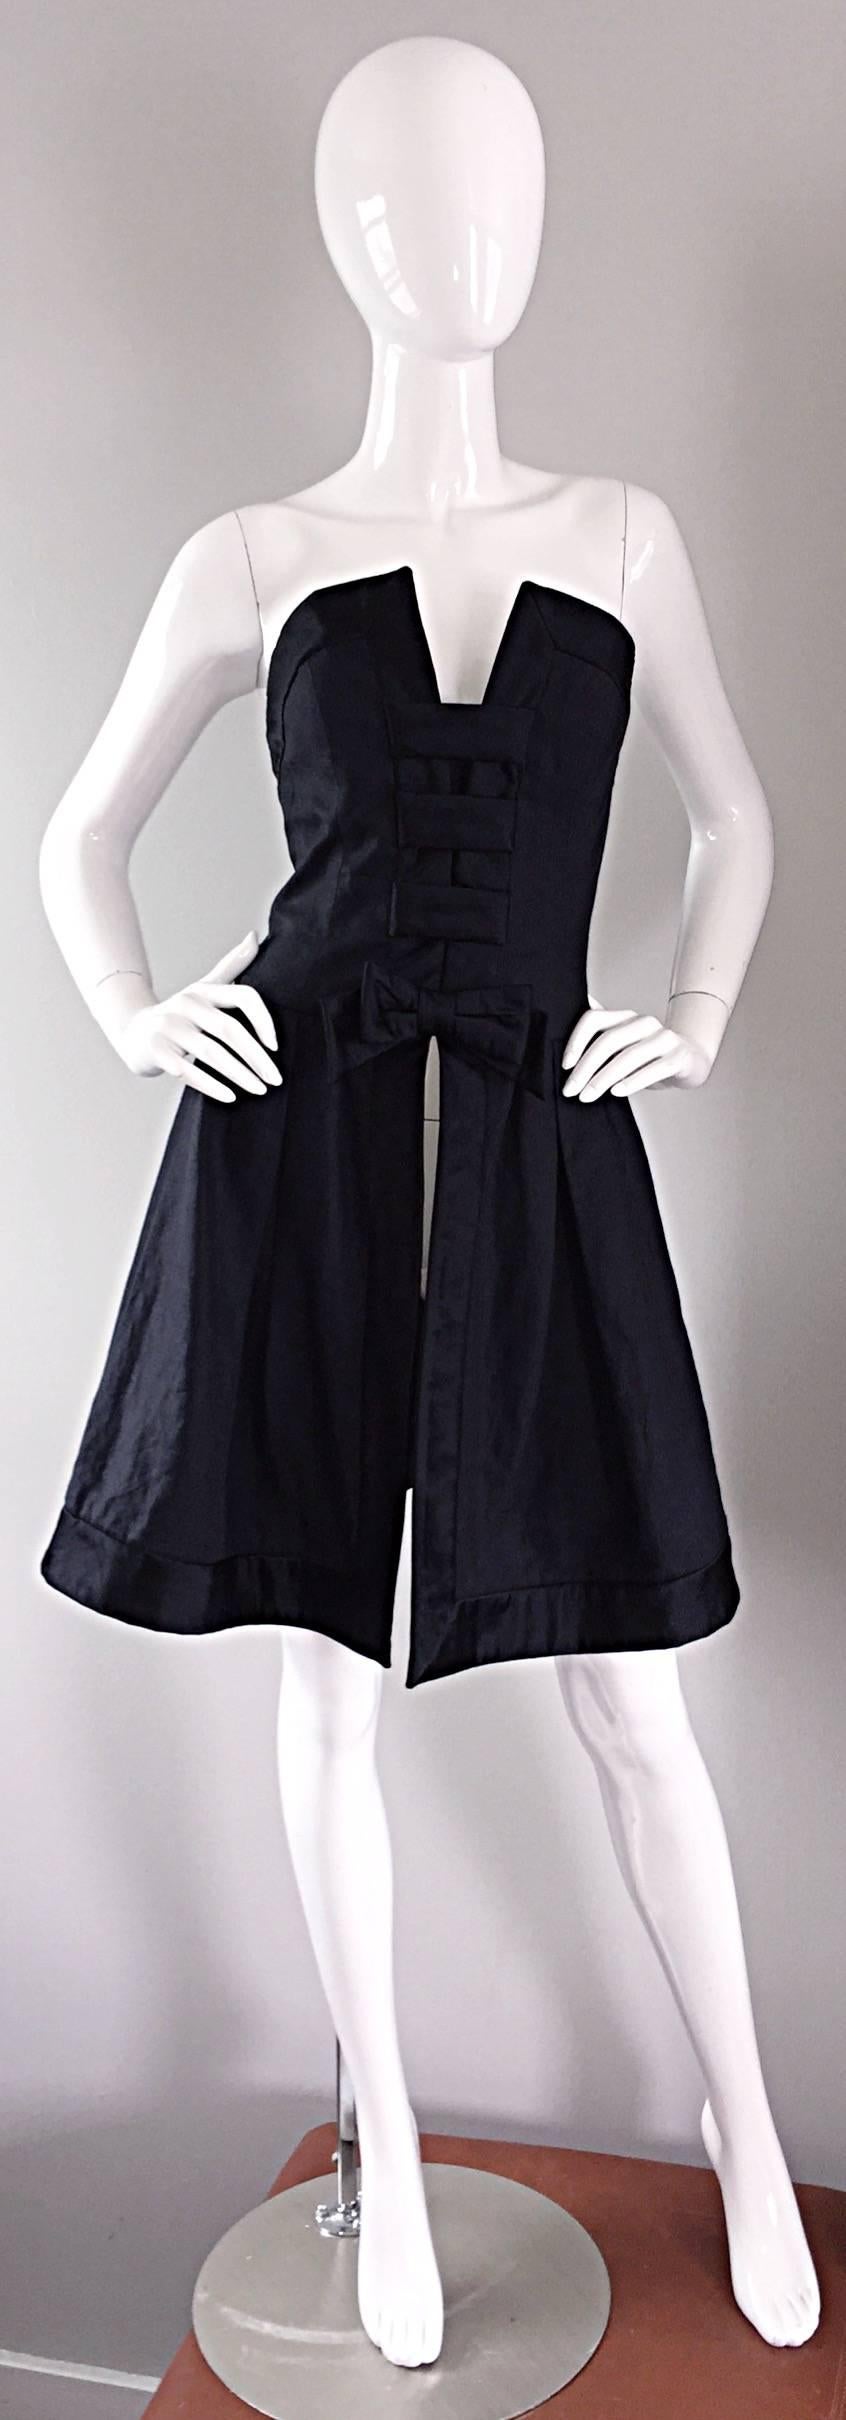 Schickes Vintage RENA LANGE schwarz Seide ' Avant Garde ' Schleife Überkleid! Dramatische Oberweite, mit schwarzer Seidenschleife in der Taille. Ausschnitte am Rücken. Sieht toll aus! Toll zu einem einfachen schwarzen Kleid oder perfekt zu einer